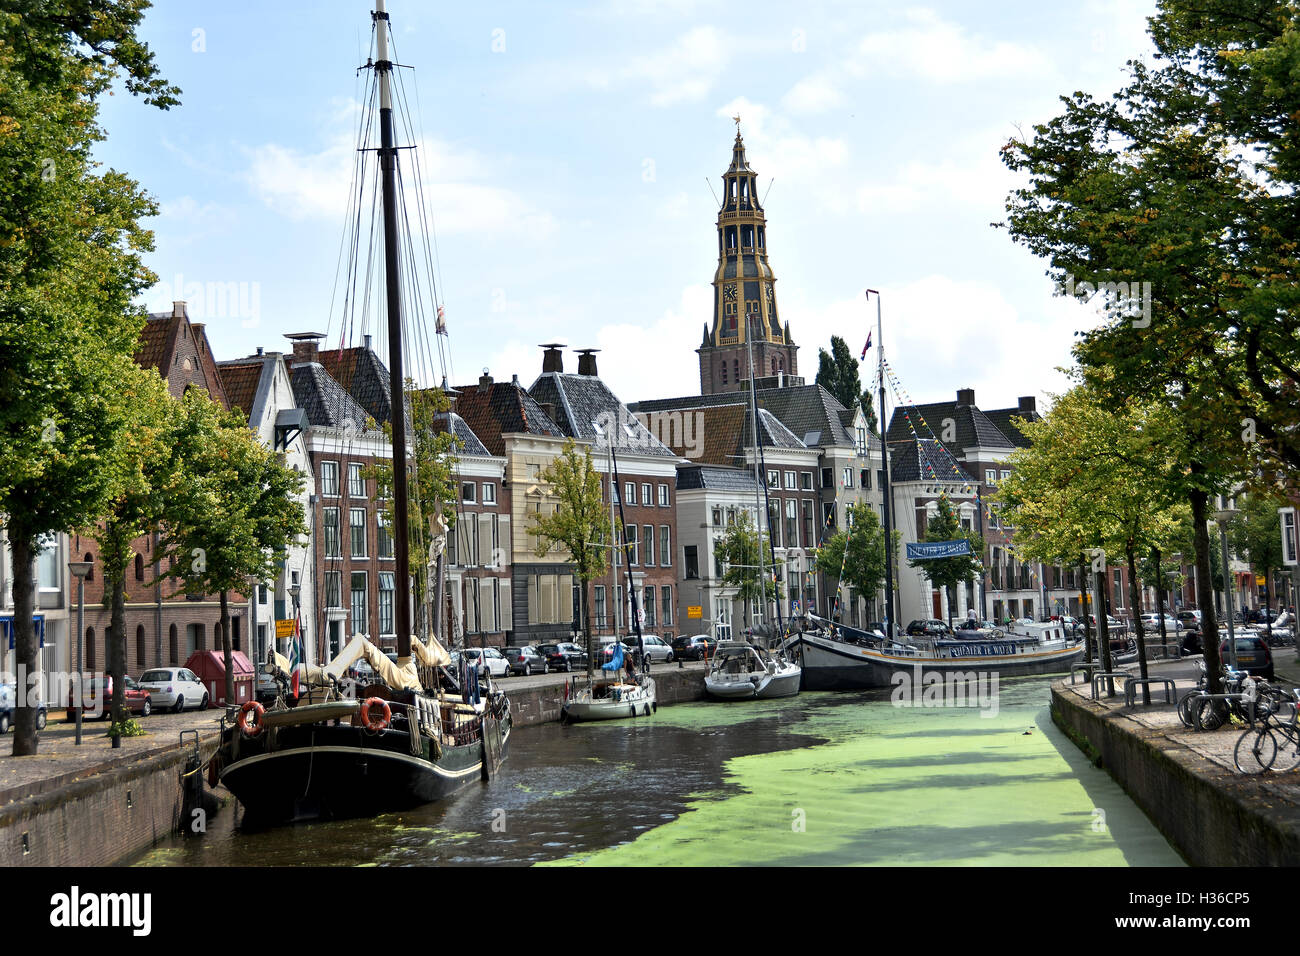 - Un canal de Hooge der Gracht Pays-bas Groningen Historique Monument Histoire Architecture Ville Ville Pays-bas Hollande Banque D'Images